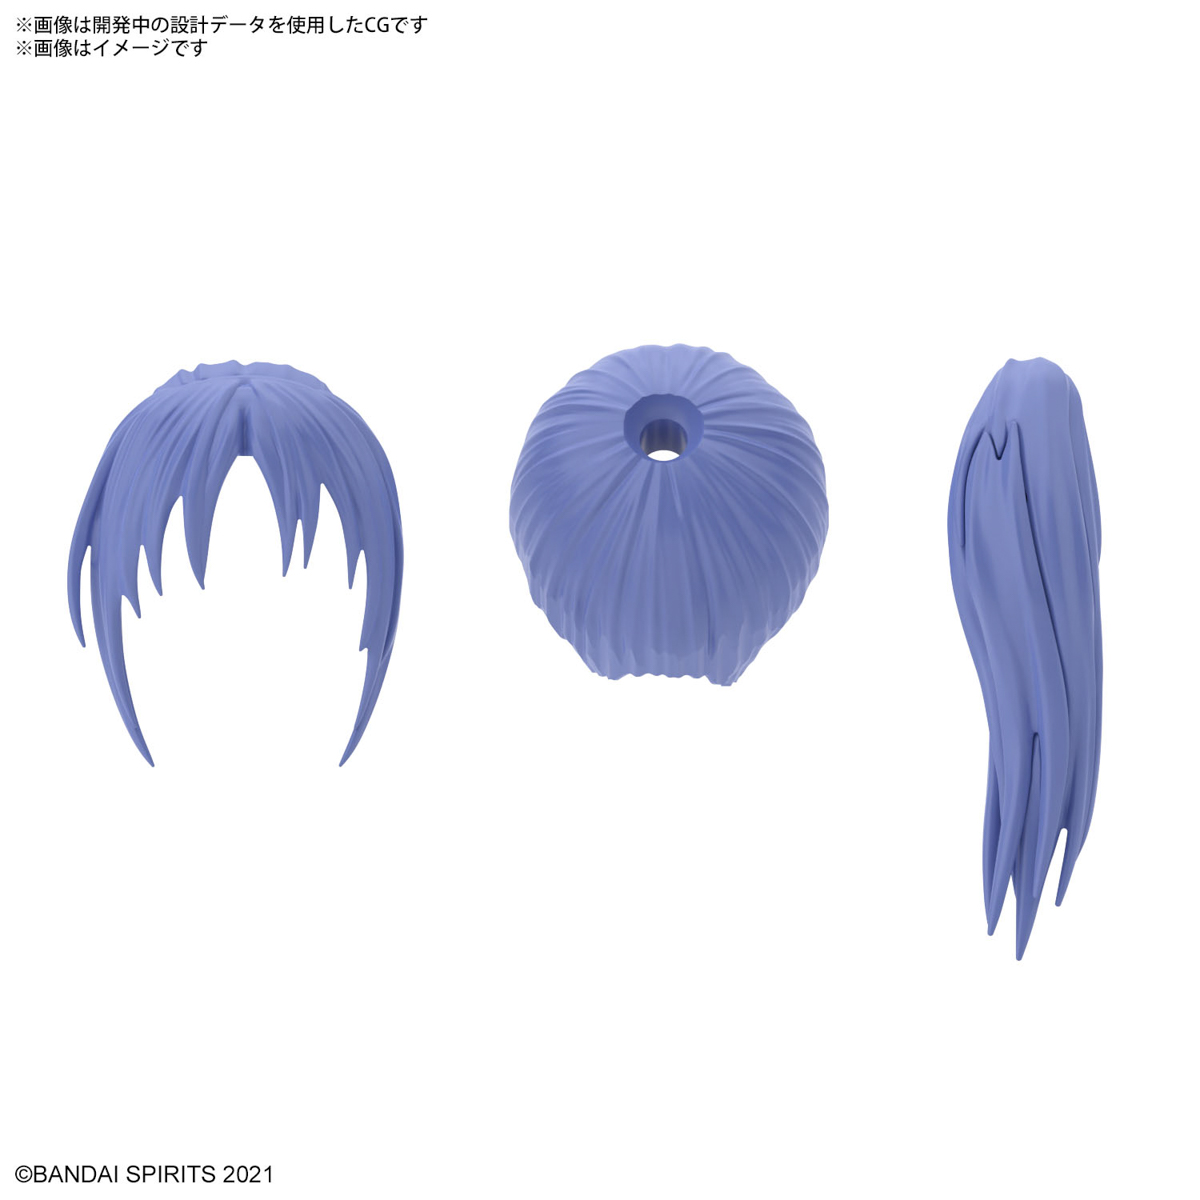 30MS オプションヘアスタイルパーツVol.6 全4種 ポニーテールヘア4[パープル1] 02